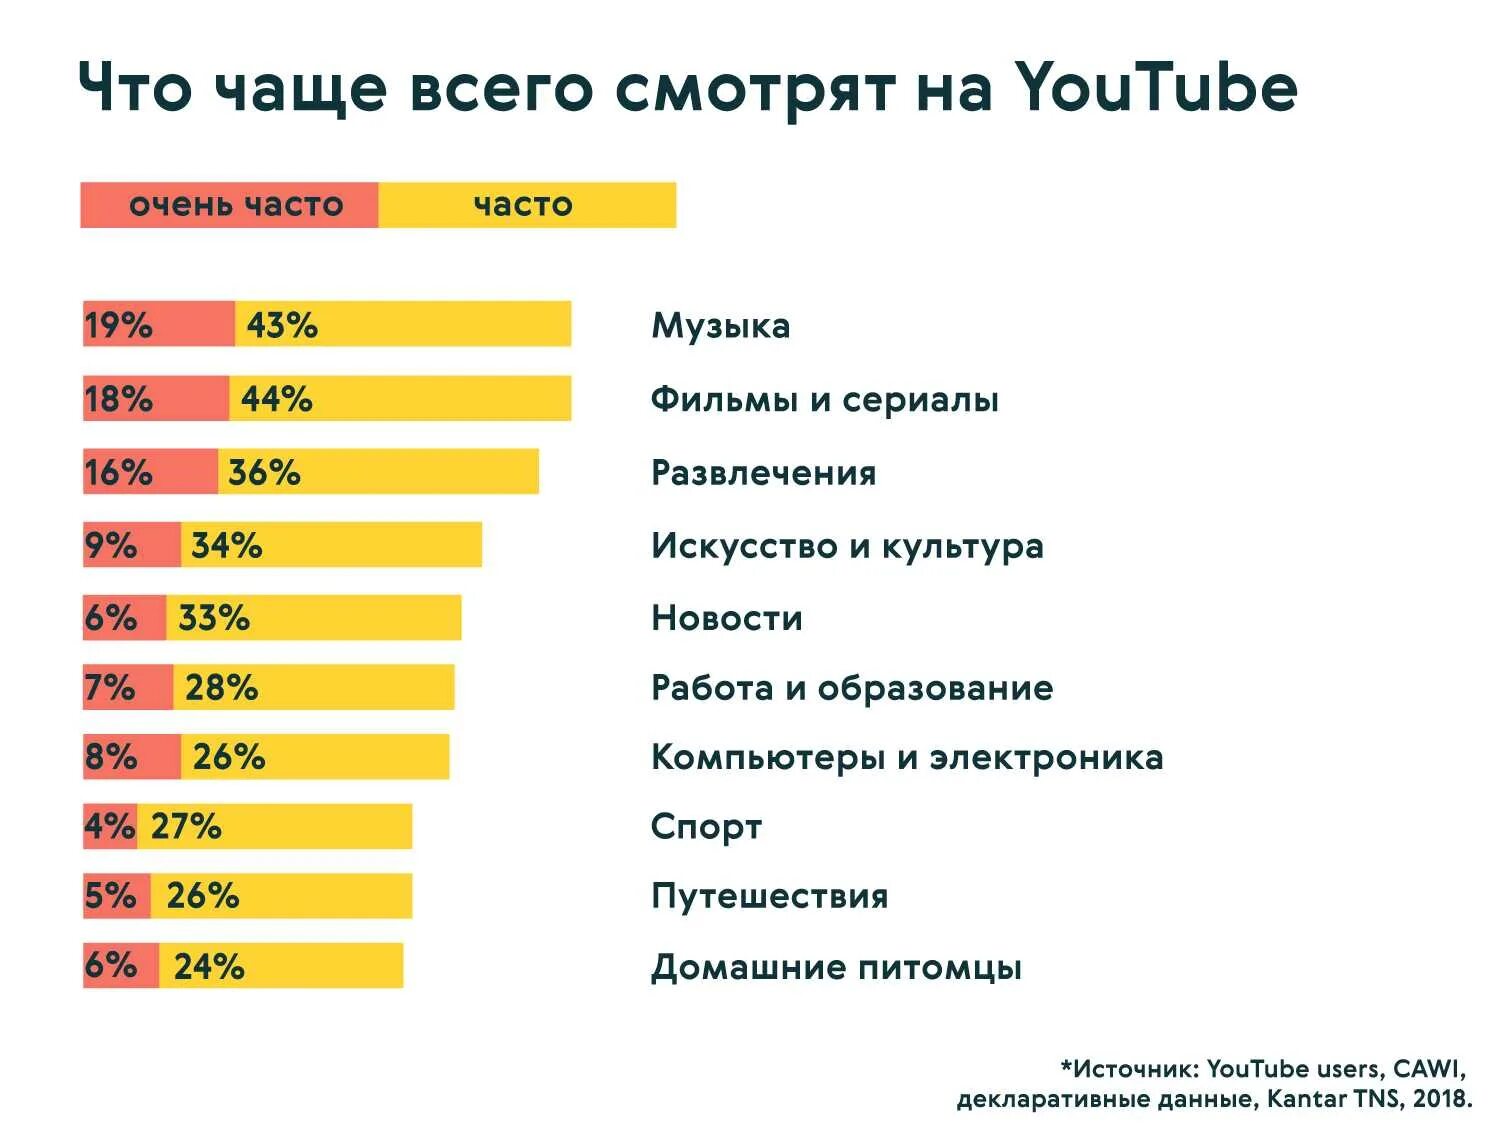 Самый популярный контент. Самый популярный контент на ютубе. Востребованный контент в России. Самый популярный контент в интернете.